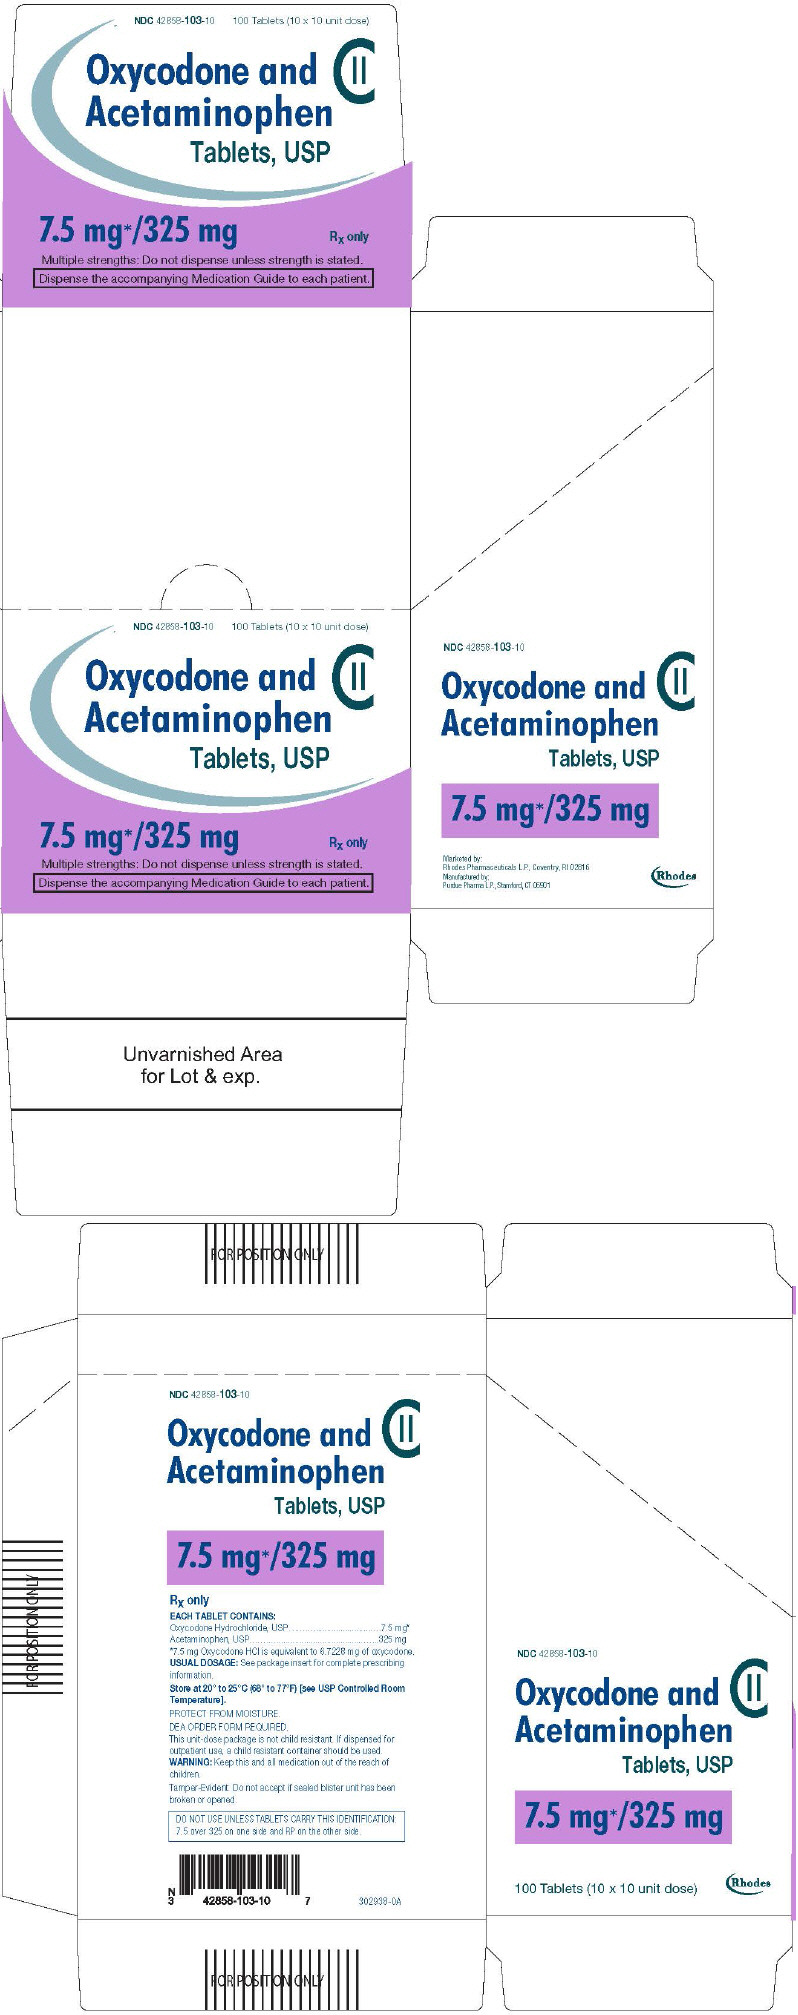 PRINCIPAL DISPLAY PANEL - 7.5 mg/325 mg Tablet Blister Pack Carton